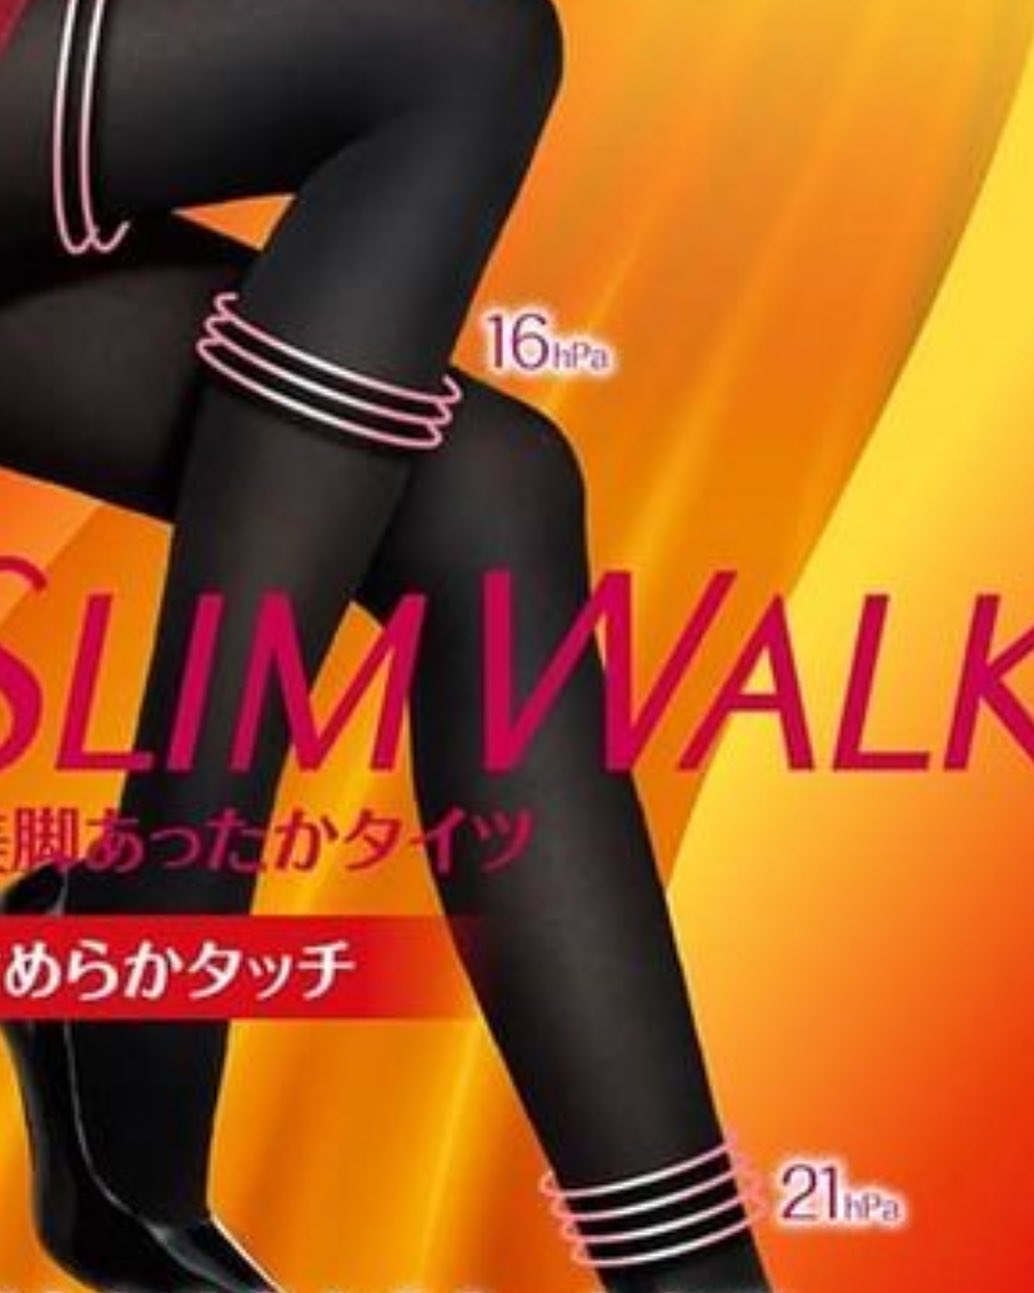 口コミ投稿：履いてみました。ちょうどいいしめつけです！#スリムウォーク #SLIMWALK #タイツ #着…